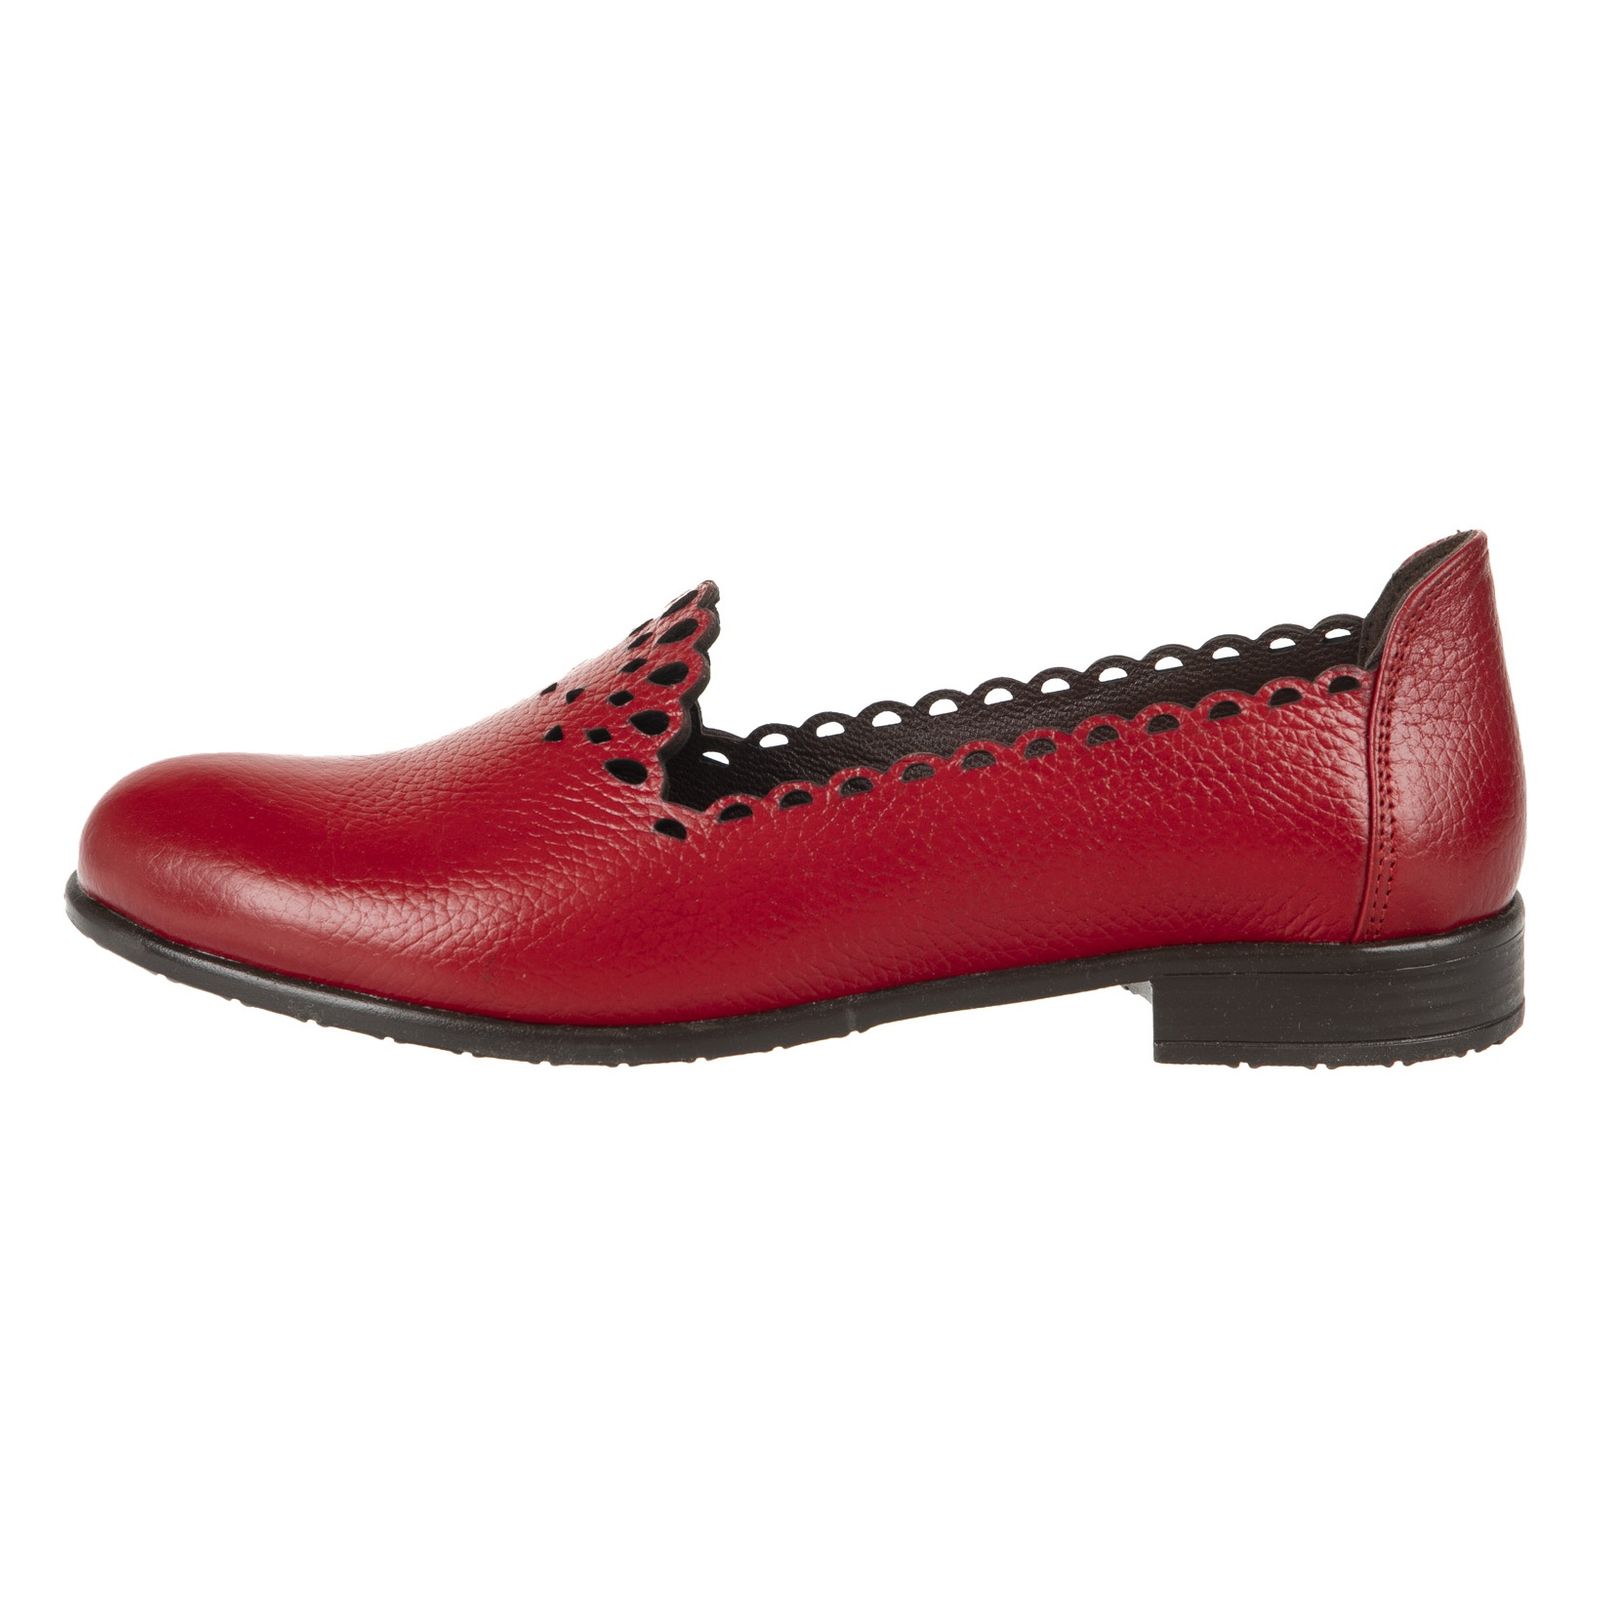 کفش روزمره زنانه ریمکس مدل 5182A500-102 - قرمز - 2